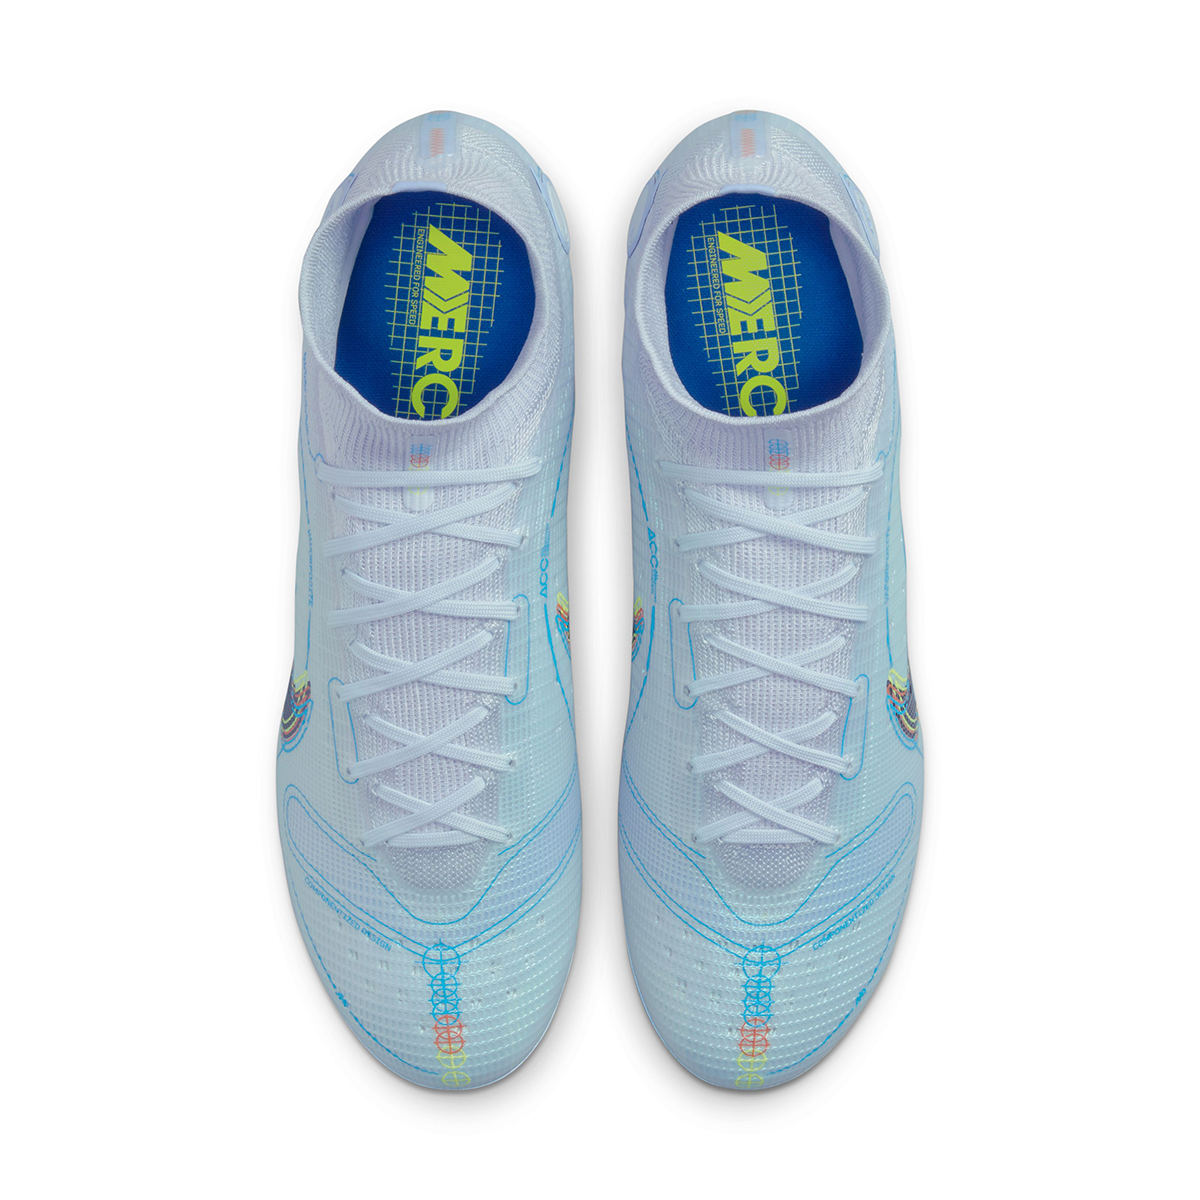 Botines Nike Mercurial Superfly 8 Elite Fg,  image number null